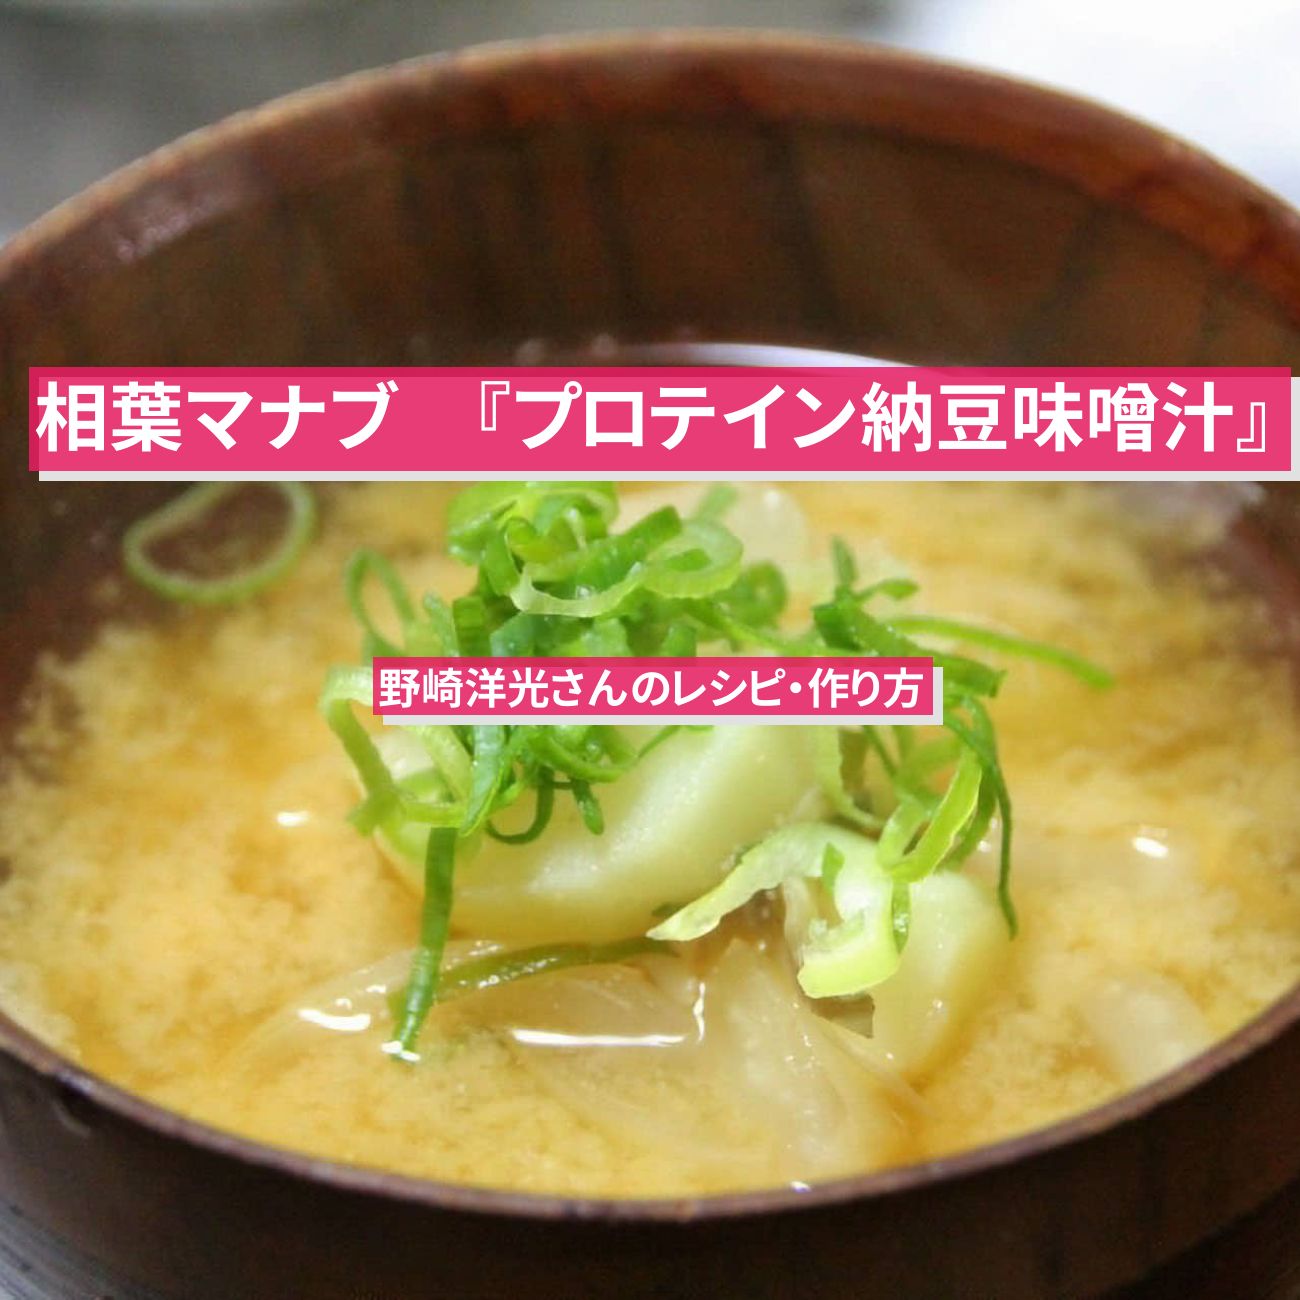 【相葉マナブ】納豆で『プロテイン納豆味噌汁』野崎洋光さんのレシピ・作り方